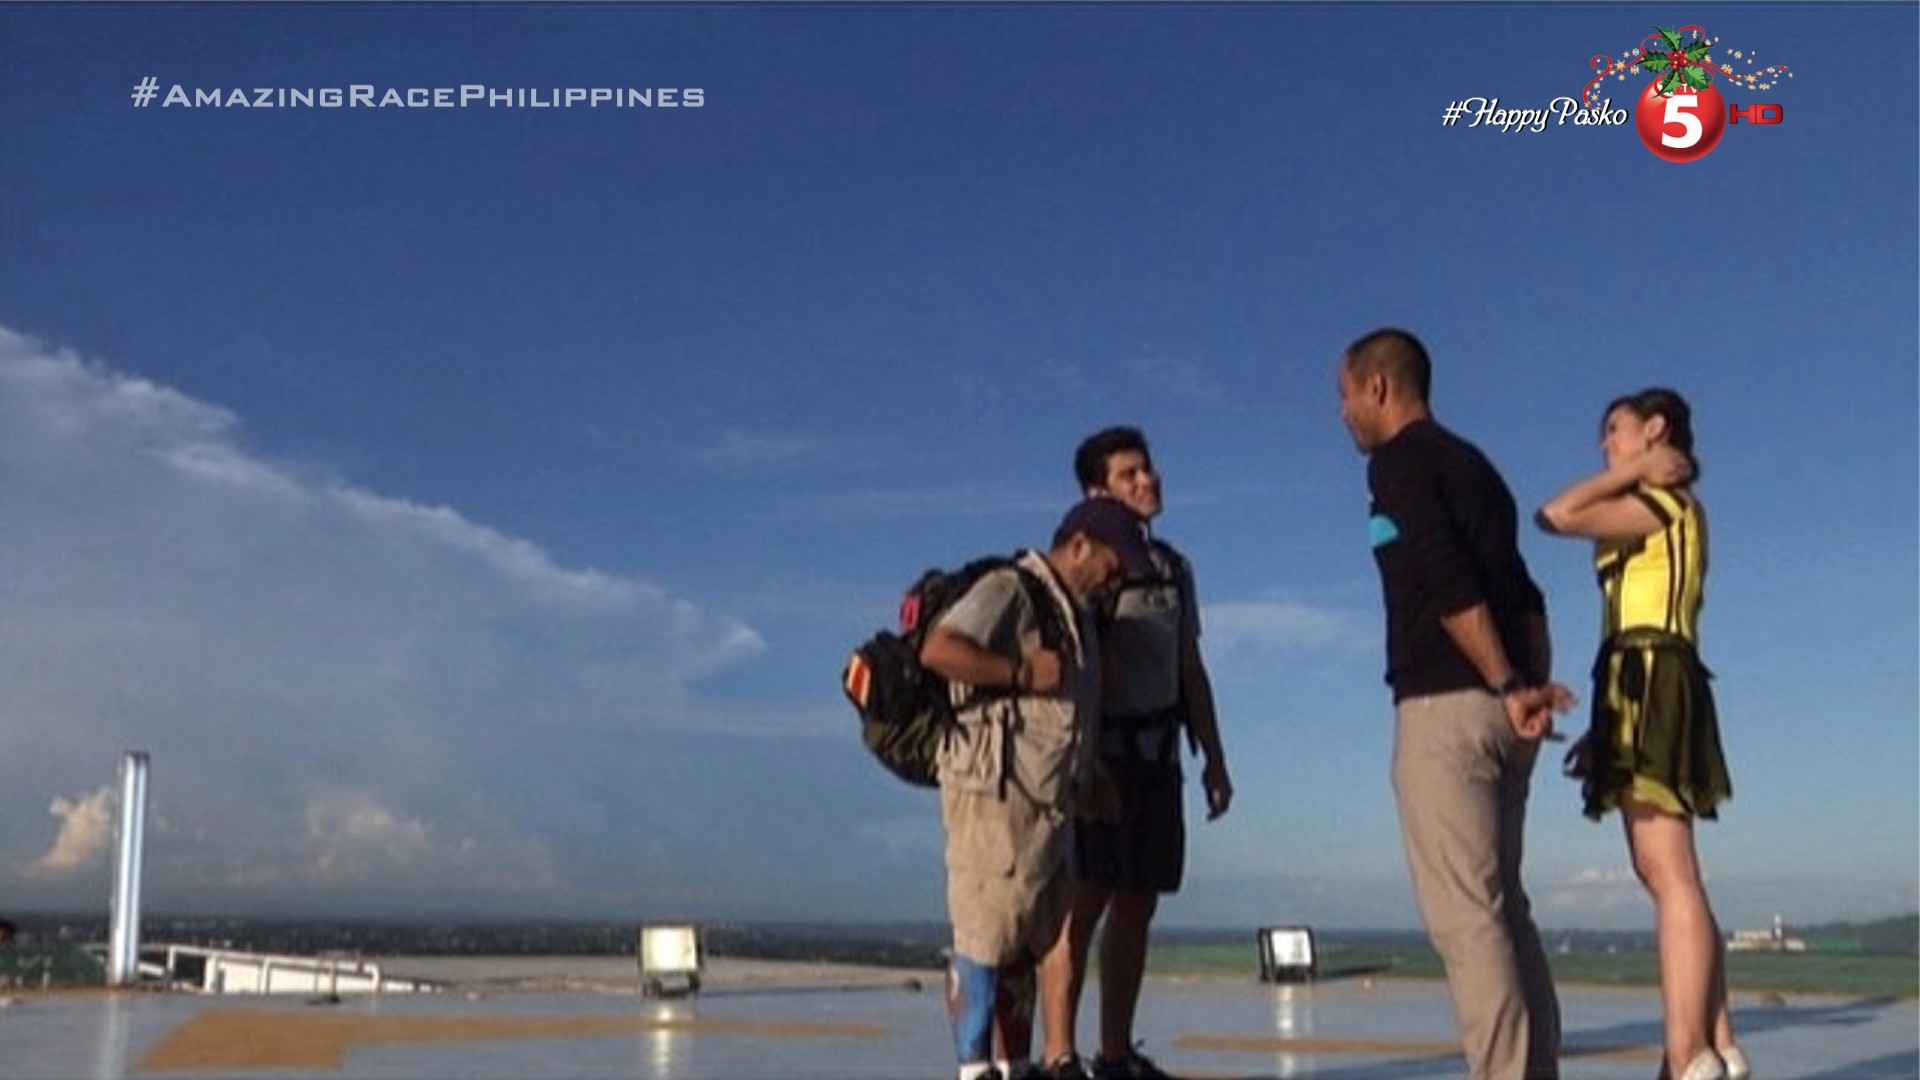 The Amazing Race Philippines 2, Leg 8 Wrap-up – "Walang kaibi-kaibigan dito."